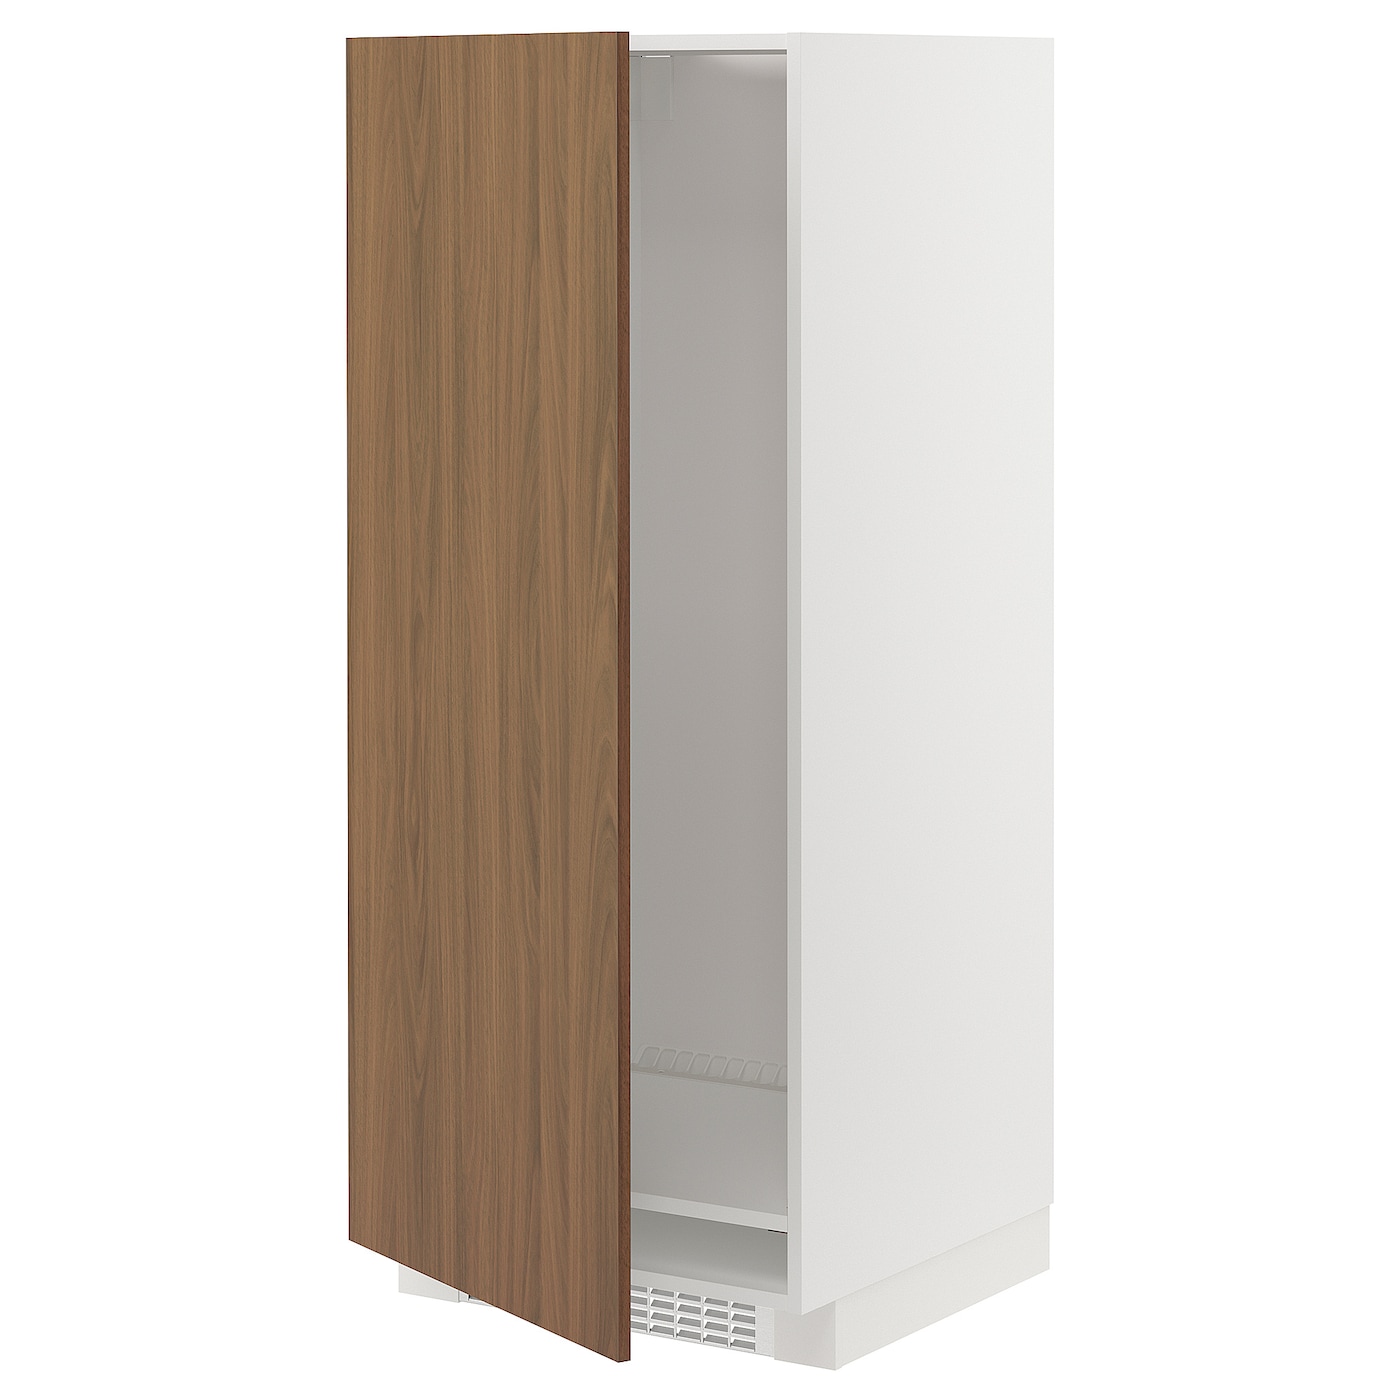 Напольный шкаф - METOD IKEA/ МЕТОД ИКЕА,  60х60 см, белый/коричневый